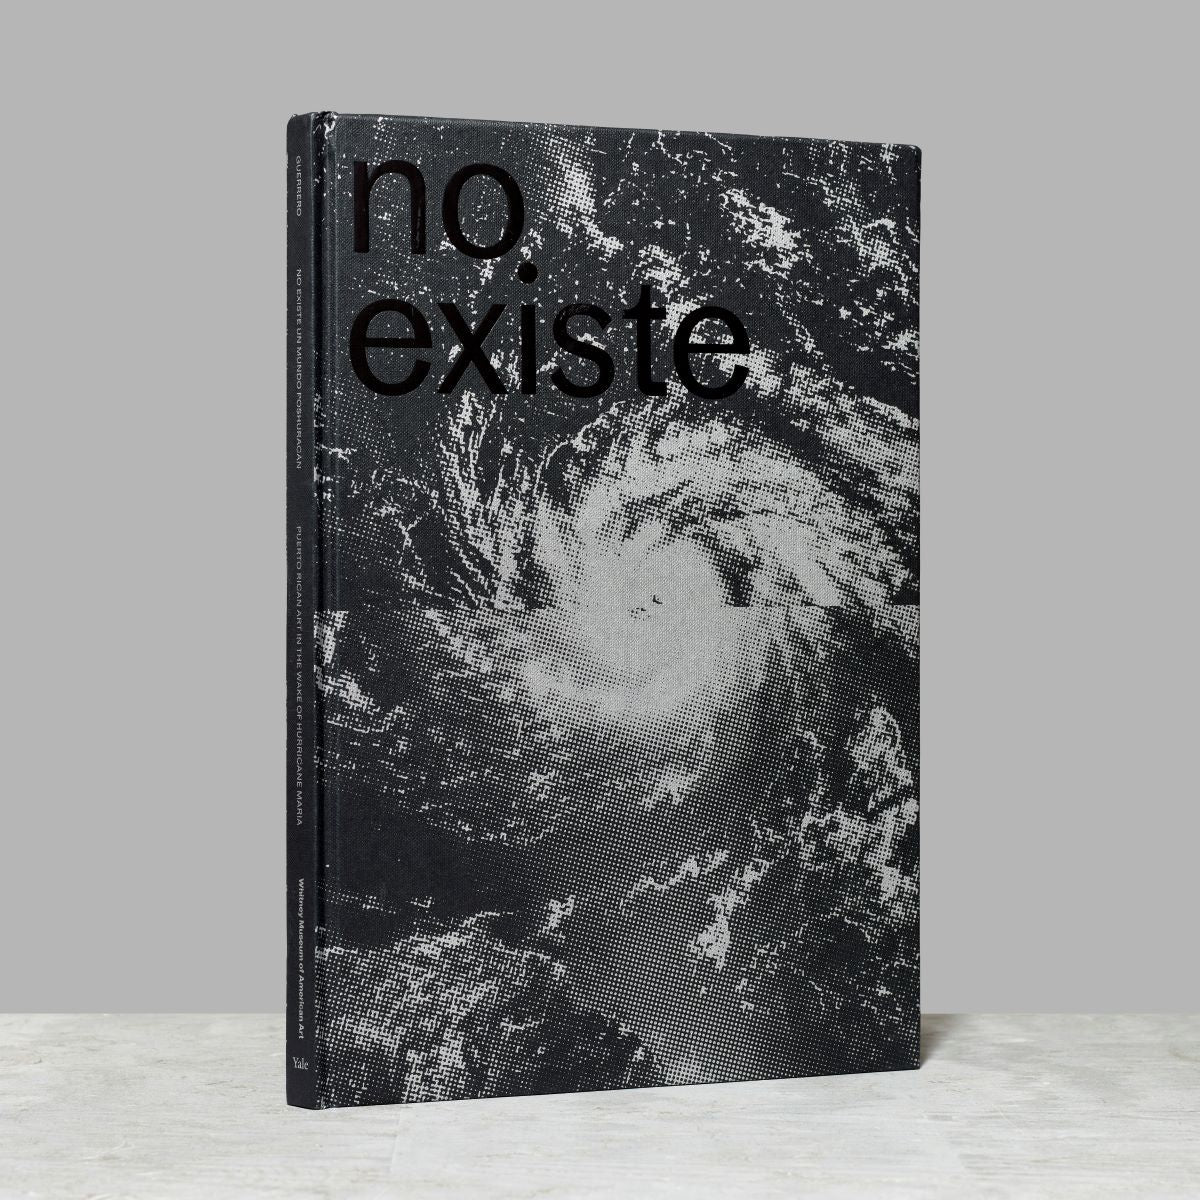 Front cover of the No existe un mundo poshuracan exhibition catalogue